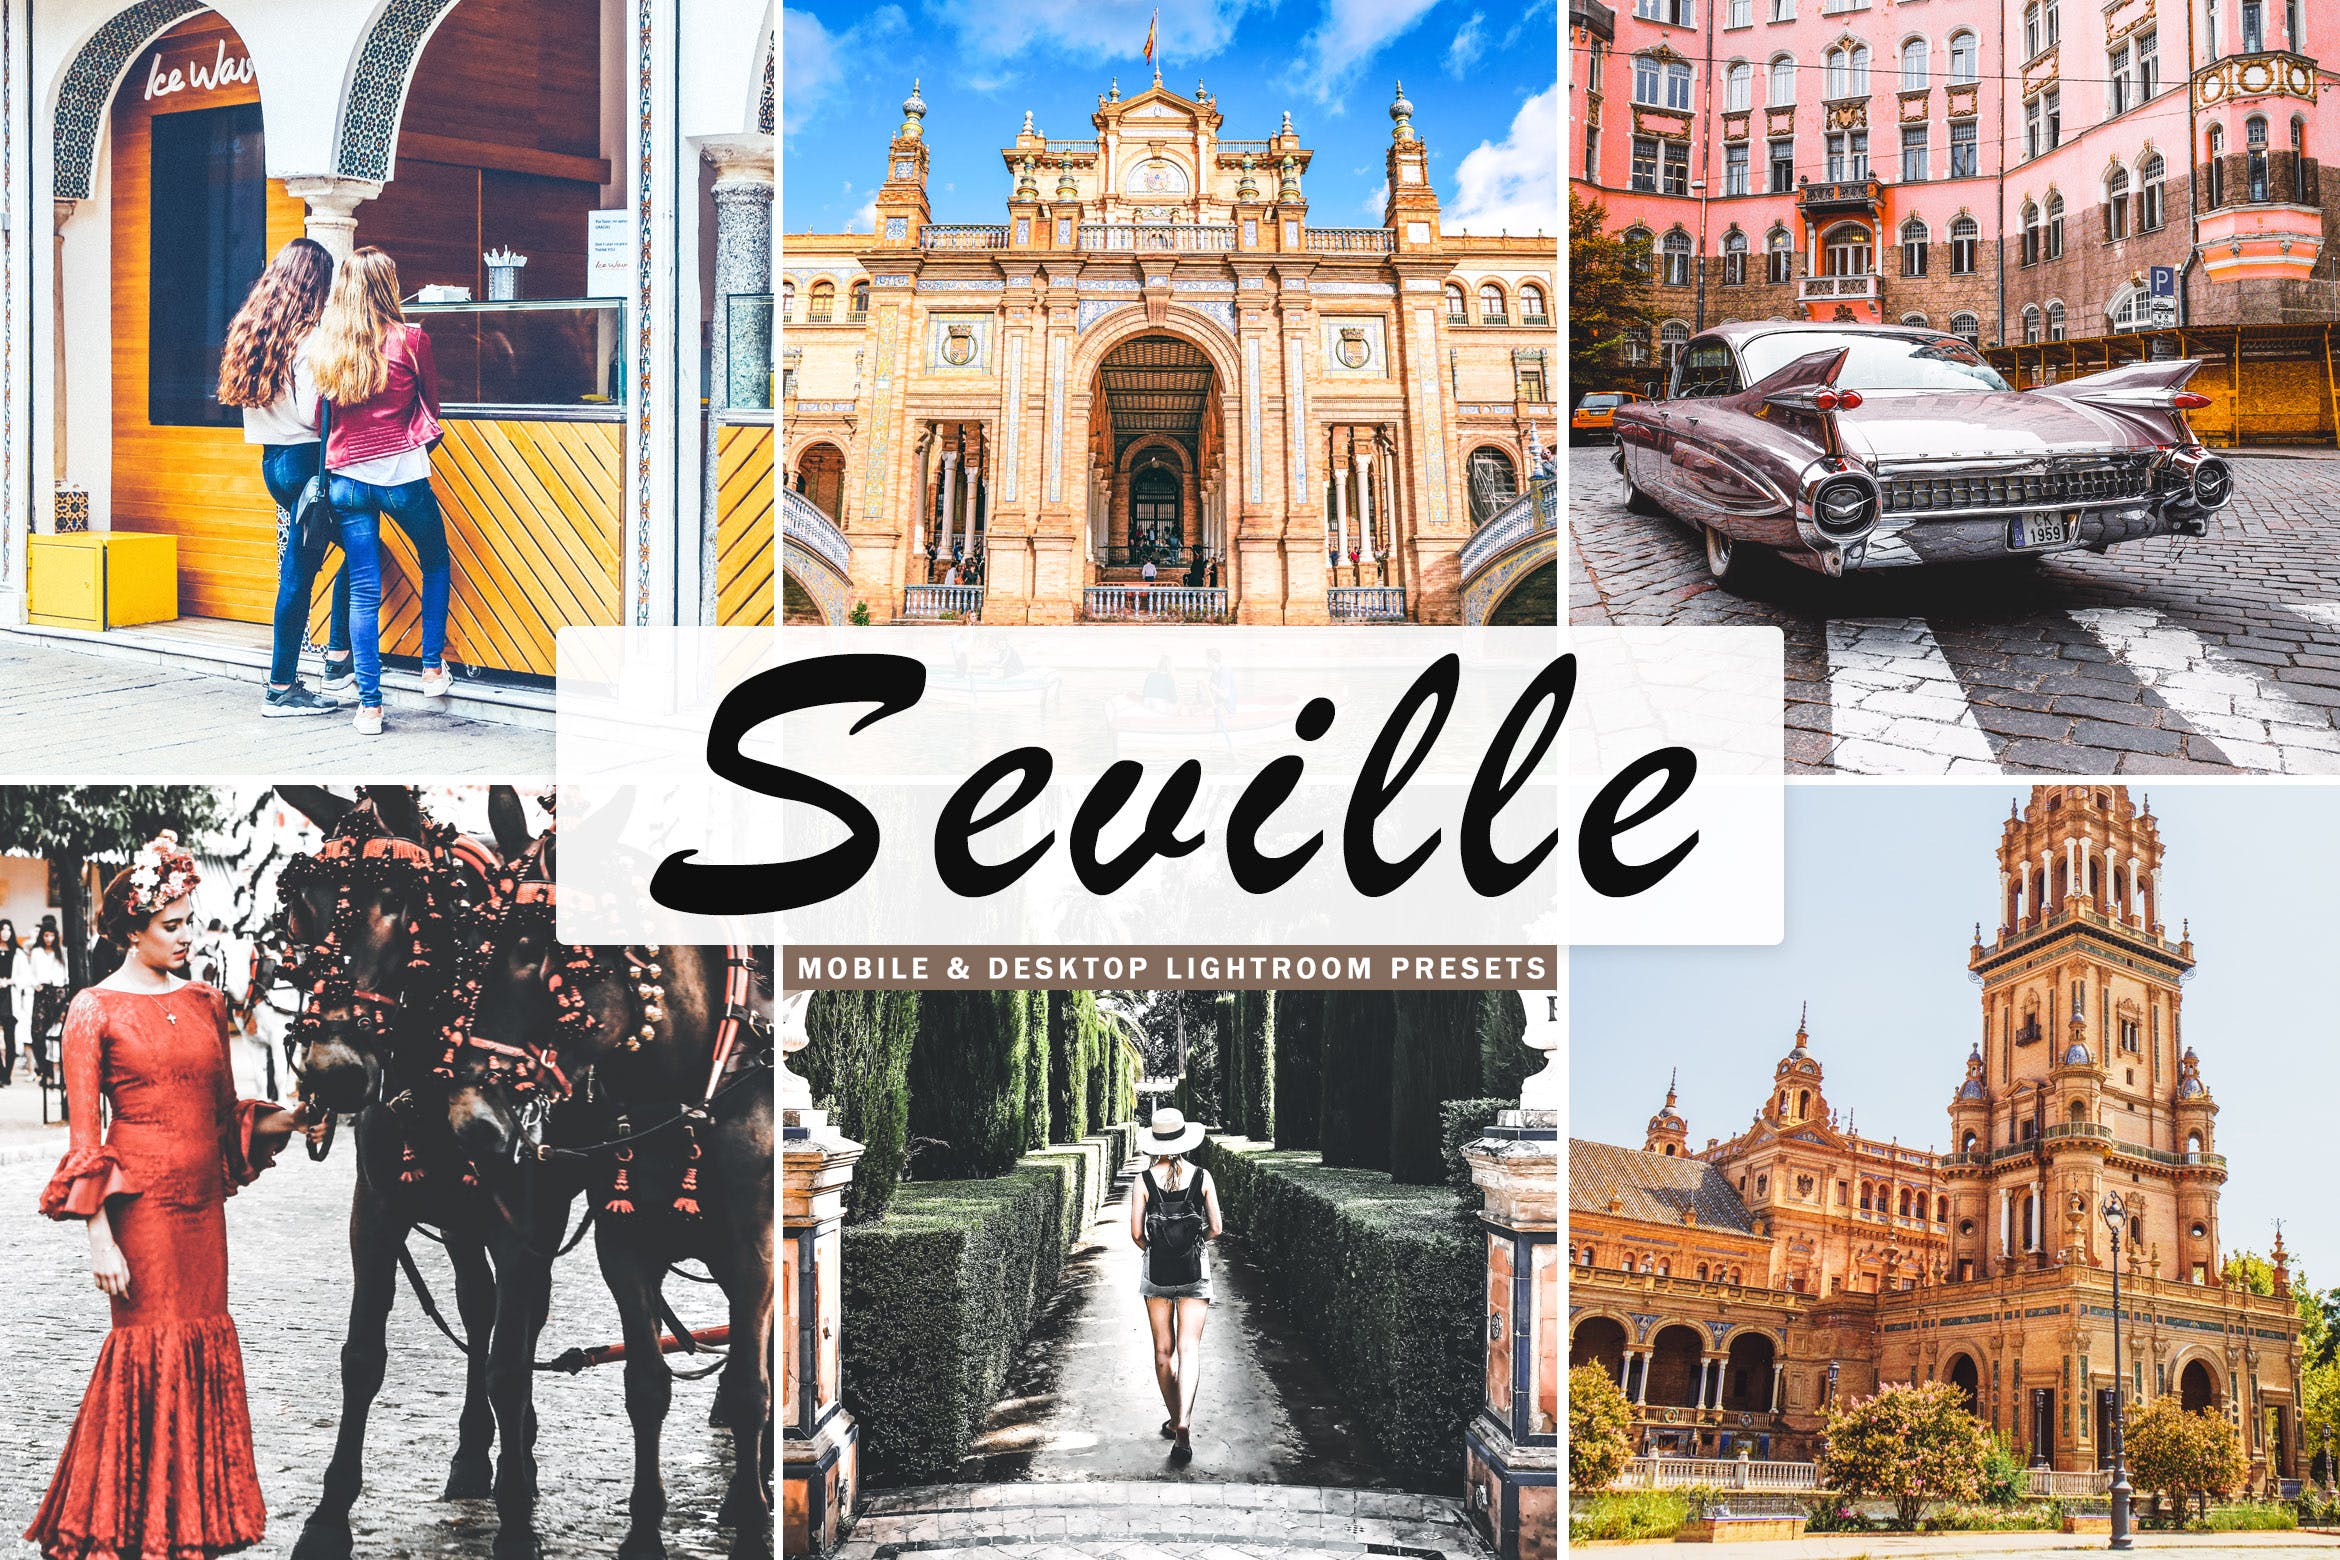 塞维利亚旅行摄影后期加工16设计素材网精选LR预设 Seville Mobile & Desktop Lightroom Presets插图